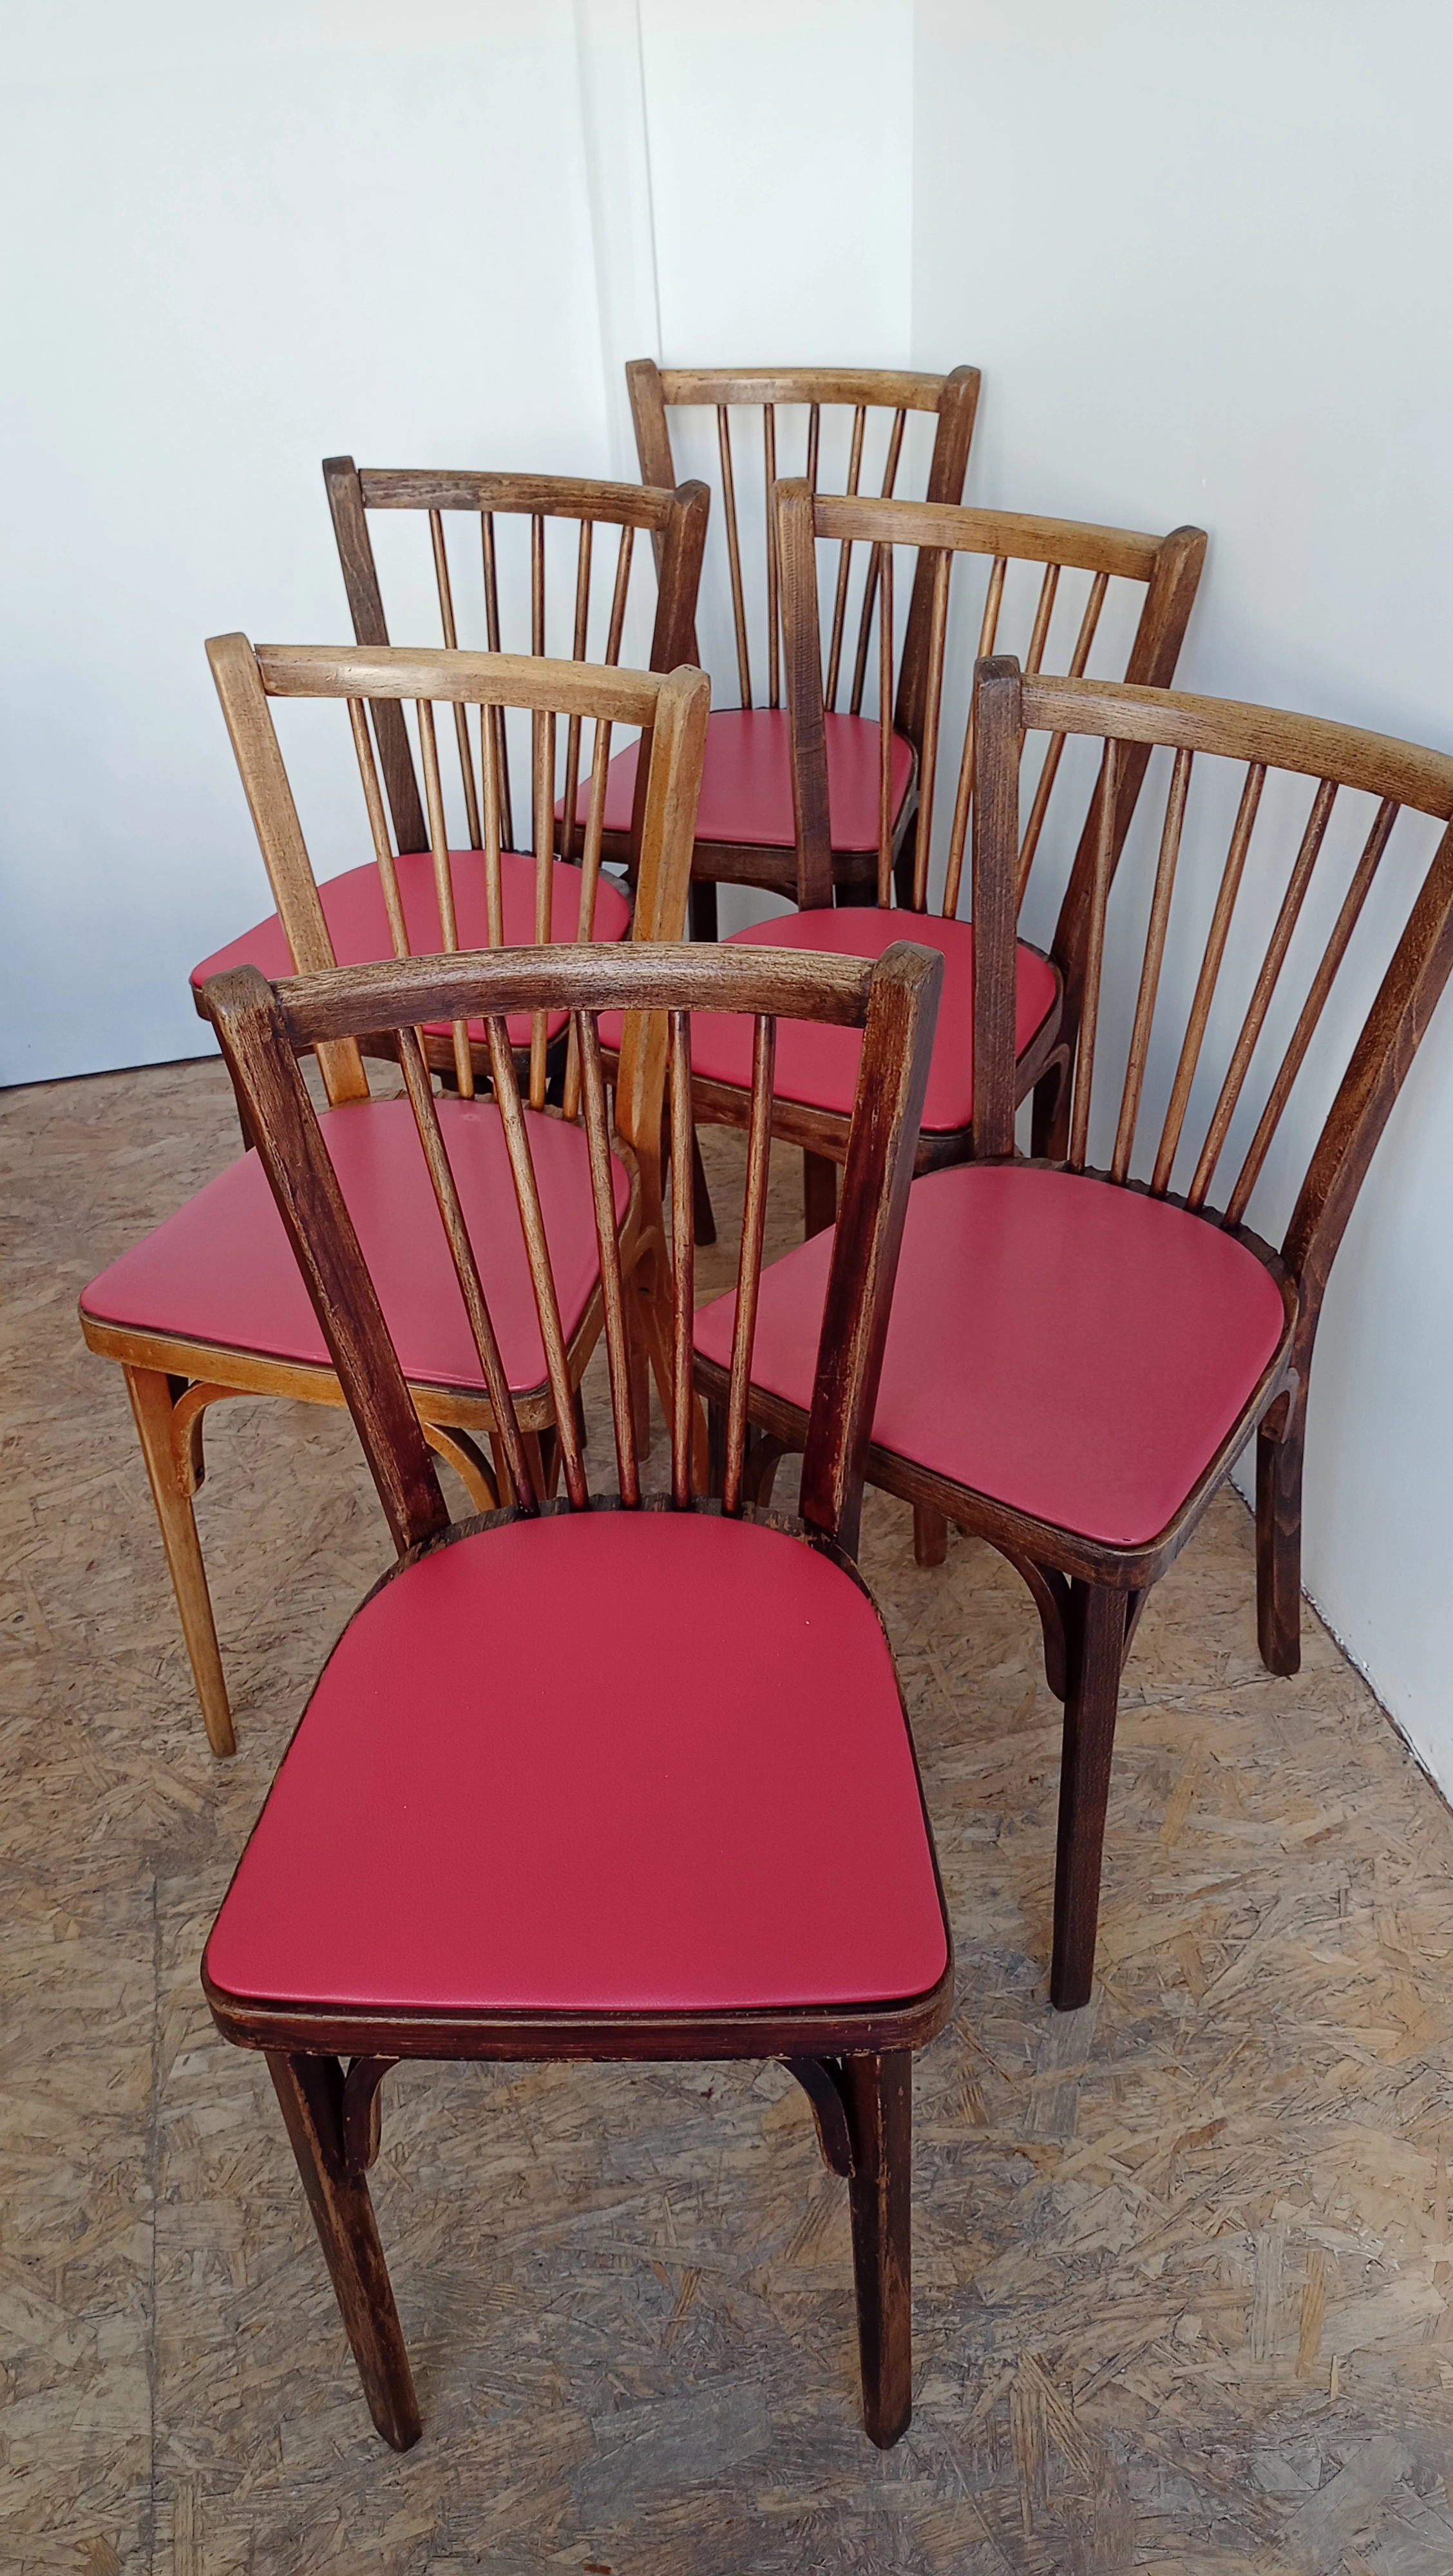 Plusieurs chaises disponibles